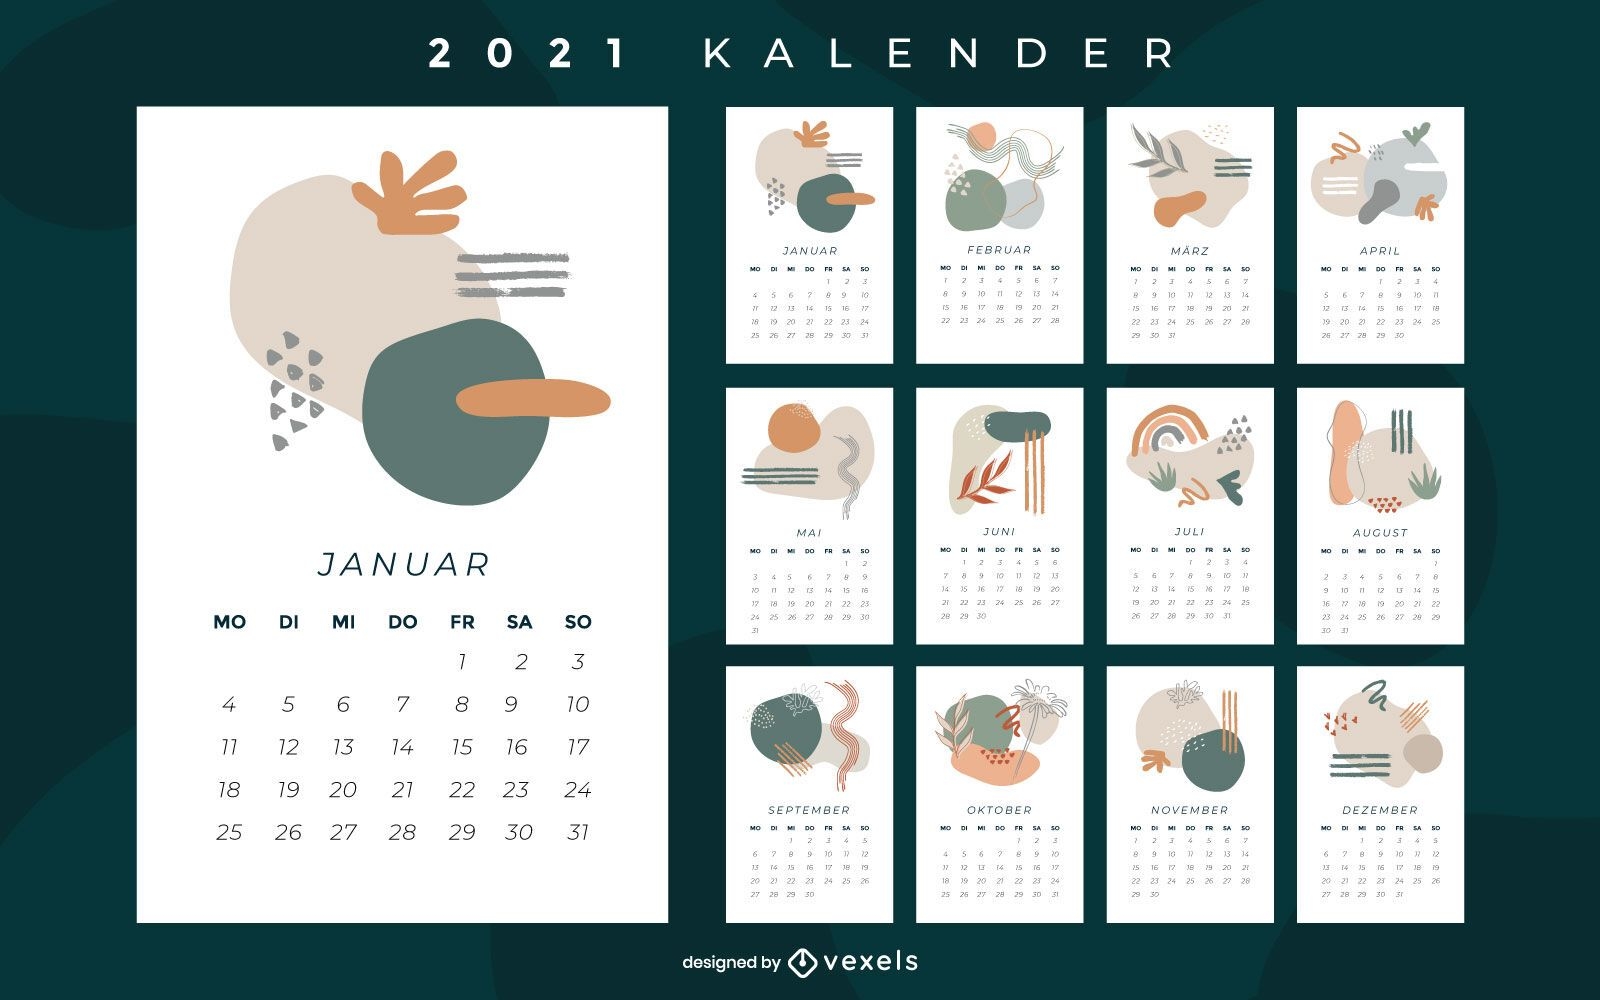 Projeto abstrato do calendário alemão 2021